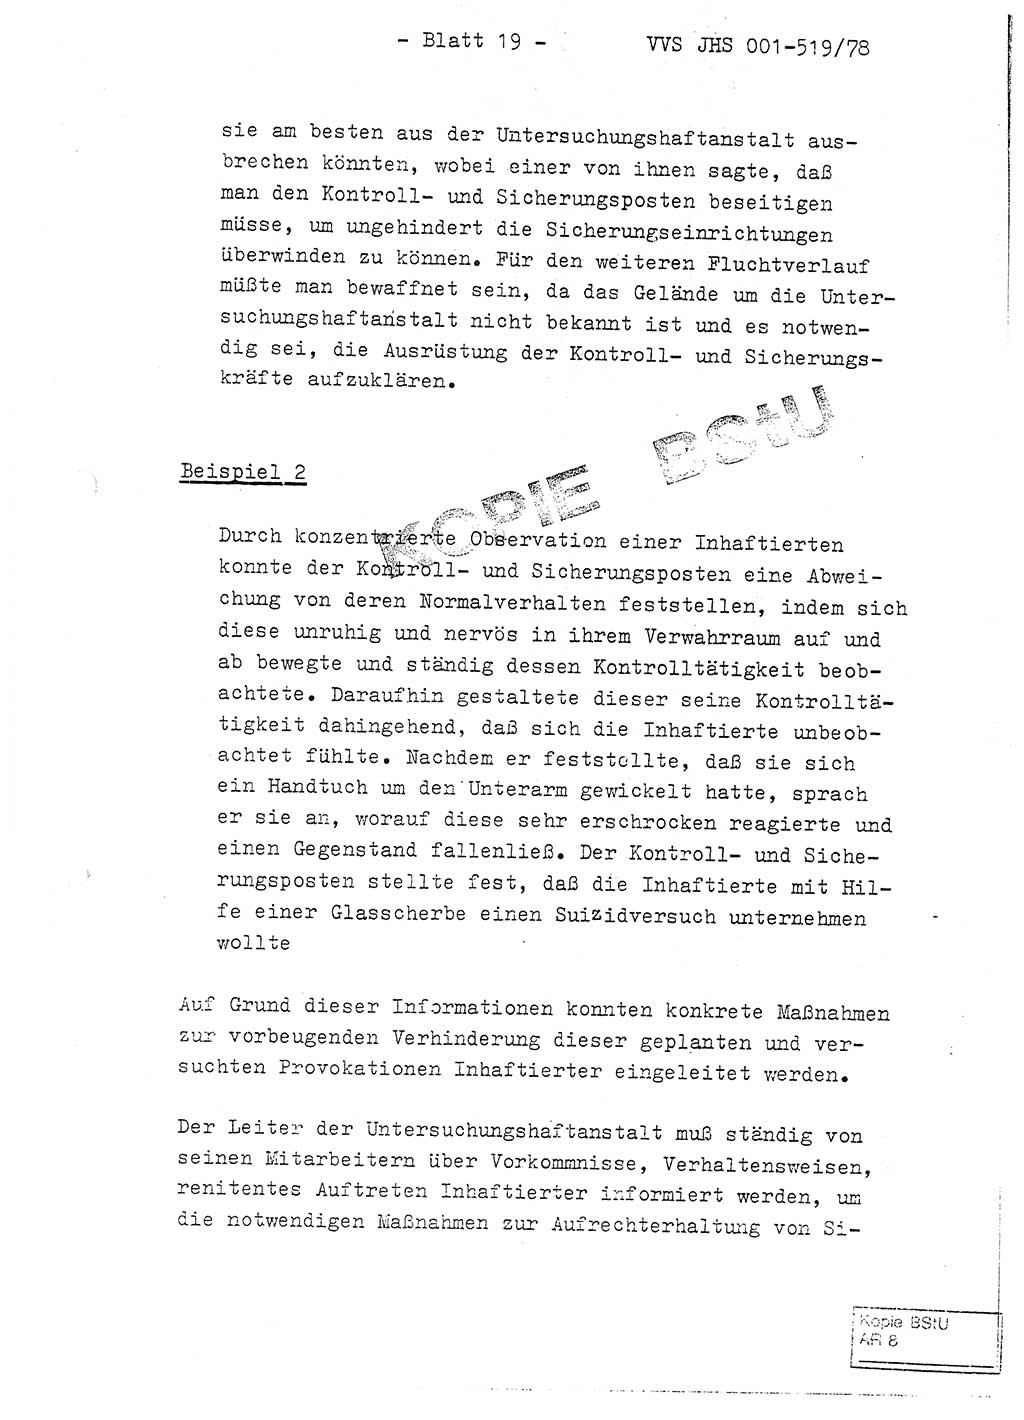 Fachschulabschlußarbeit Hauptmann Alfons Lützelberger (Abt. ⅩⅣ), Ministerium für Staatssicherheit (MfS) [Deutsche Demokratische Republik (DDR)], Juristische Hochschule (JHS), Vertrauliche Verschlußsache (VVS) 001-519/78, Potsdam 1978, Blatt 19 (FS-Abschl.-Arb. MfS DDR JHS VVS 001-519/78 1978, Bl. 19)